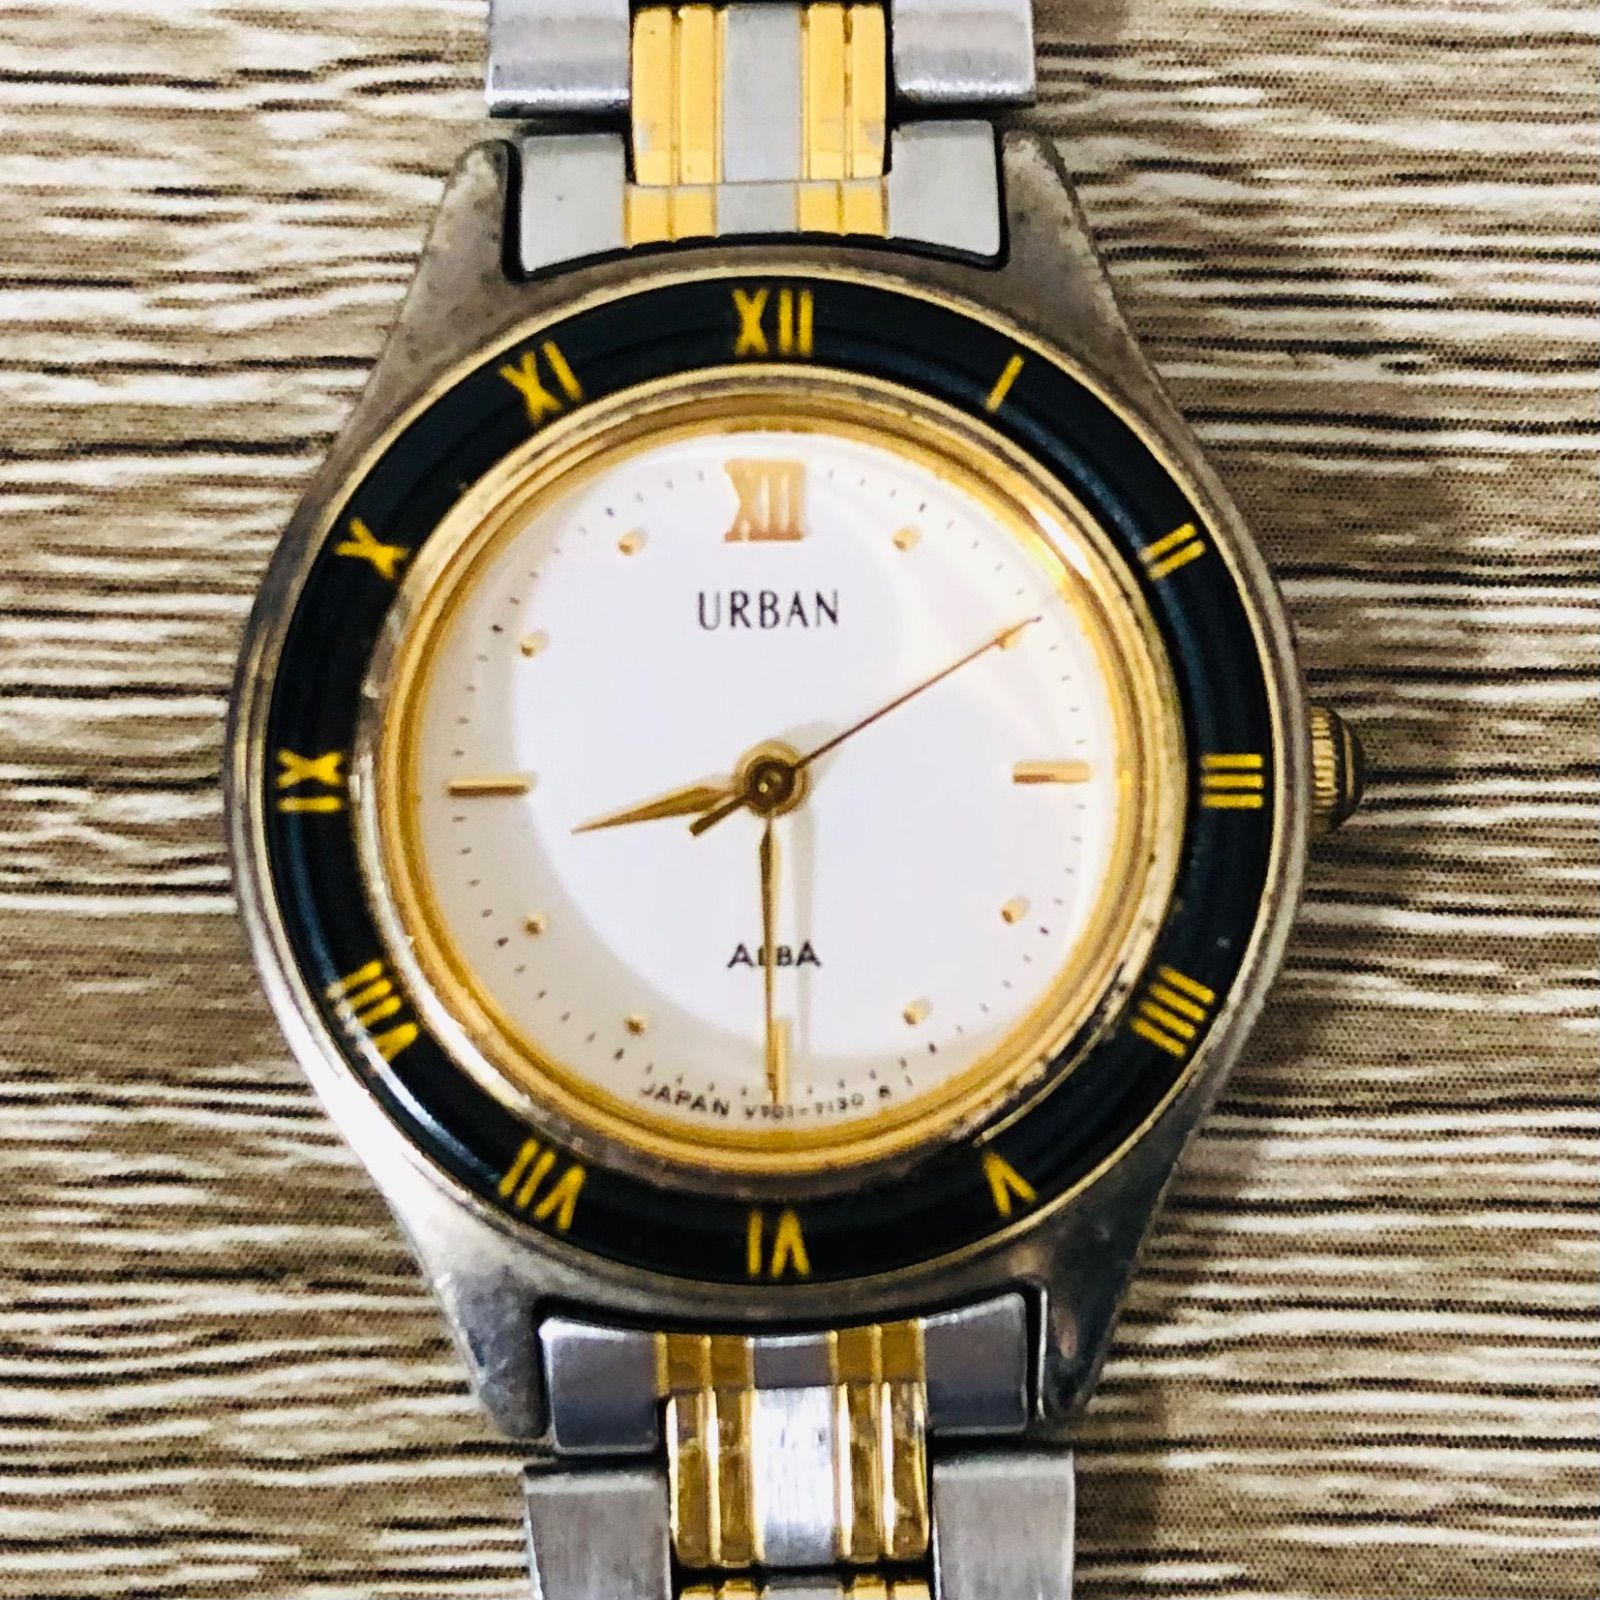 T-150 SEIKO セイコー URBAN ALBA アーバン アルバ レディース 腕時計 V701-6780